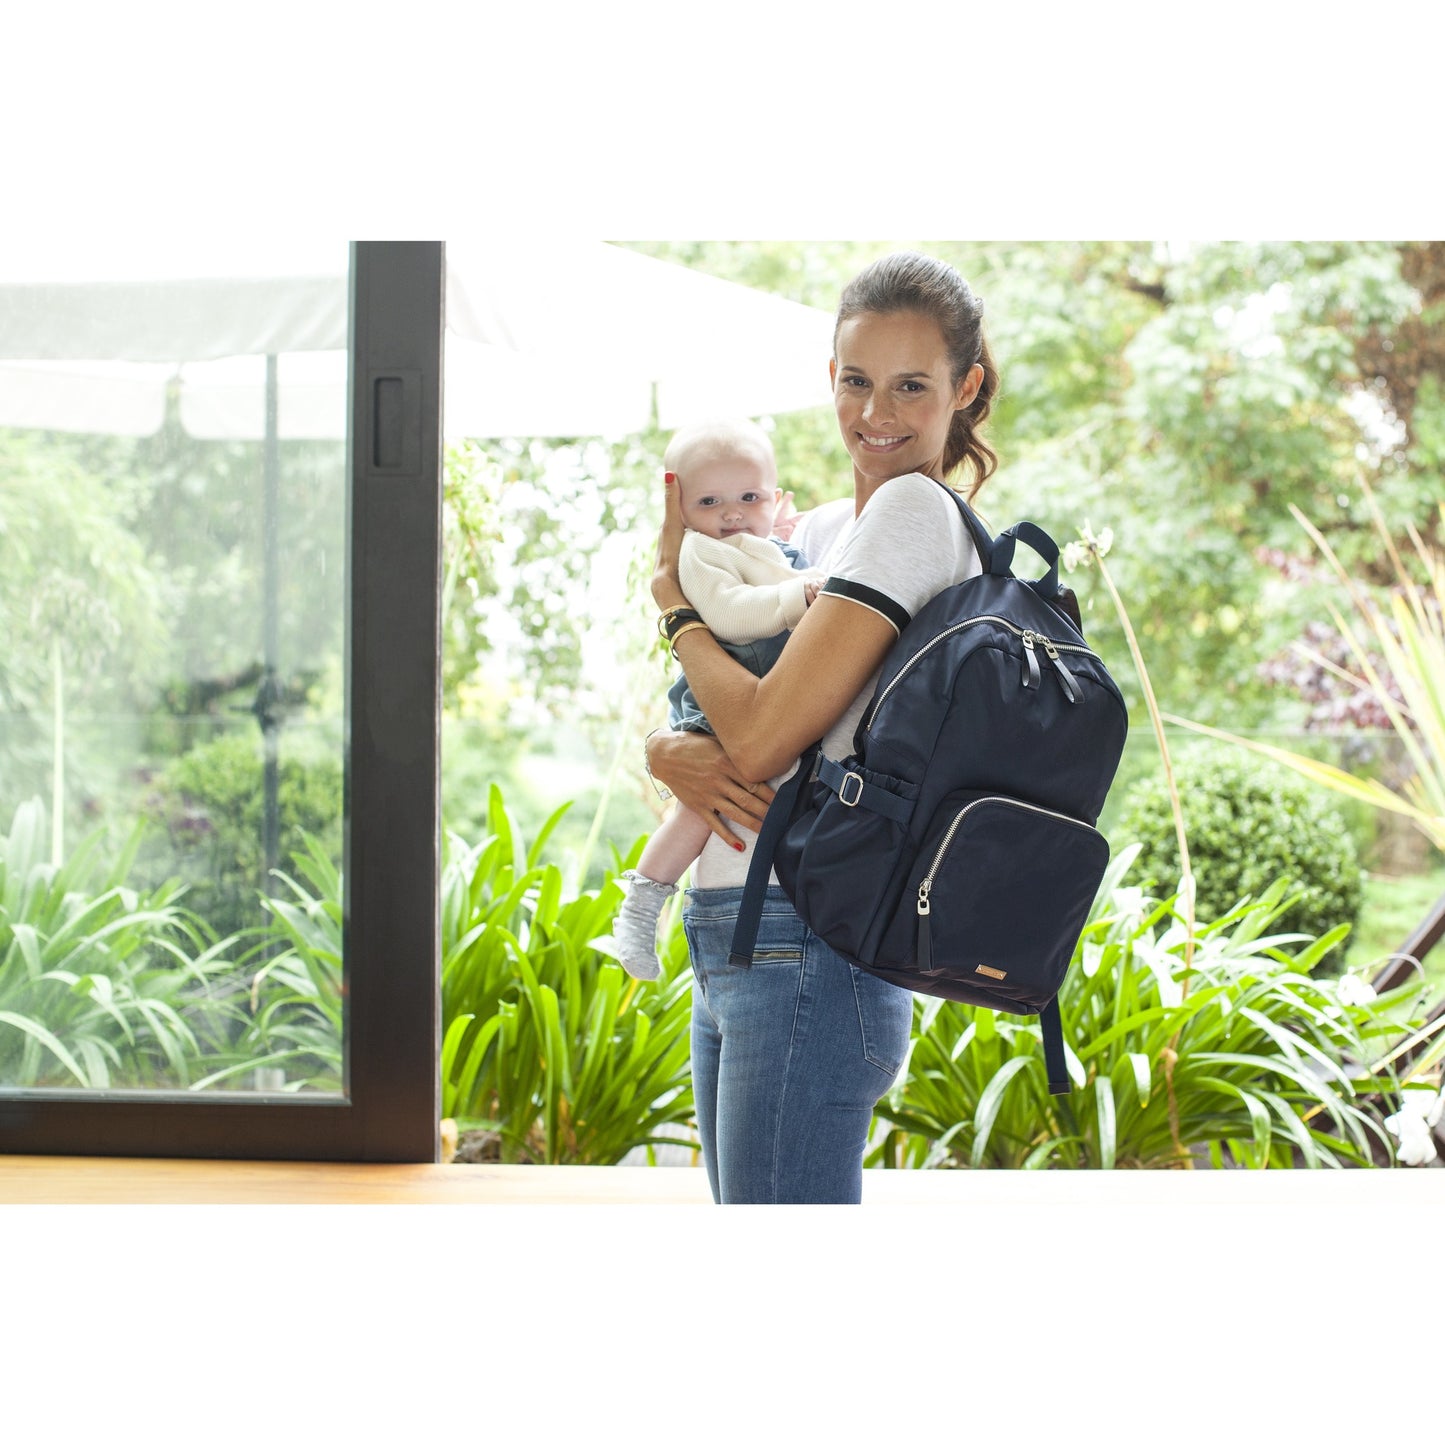 Baby Bag - Storksak Hero Backpack Navy - Baby Luno